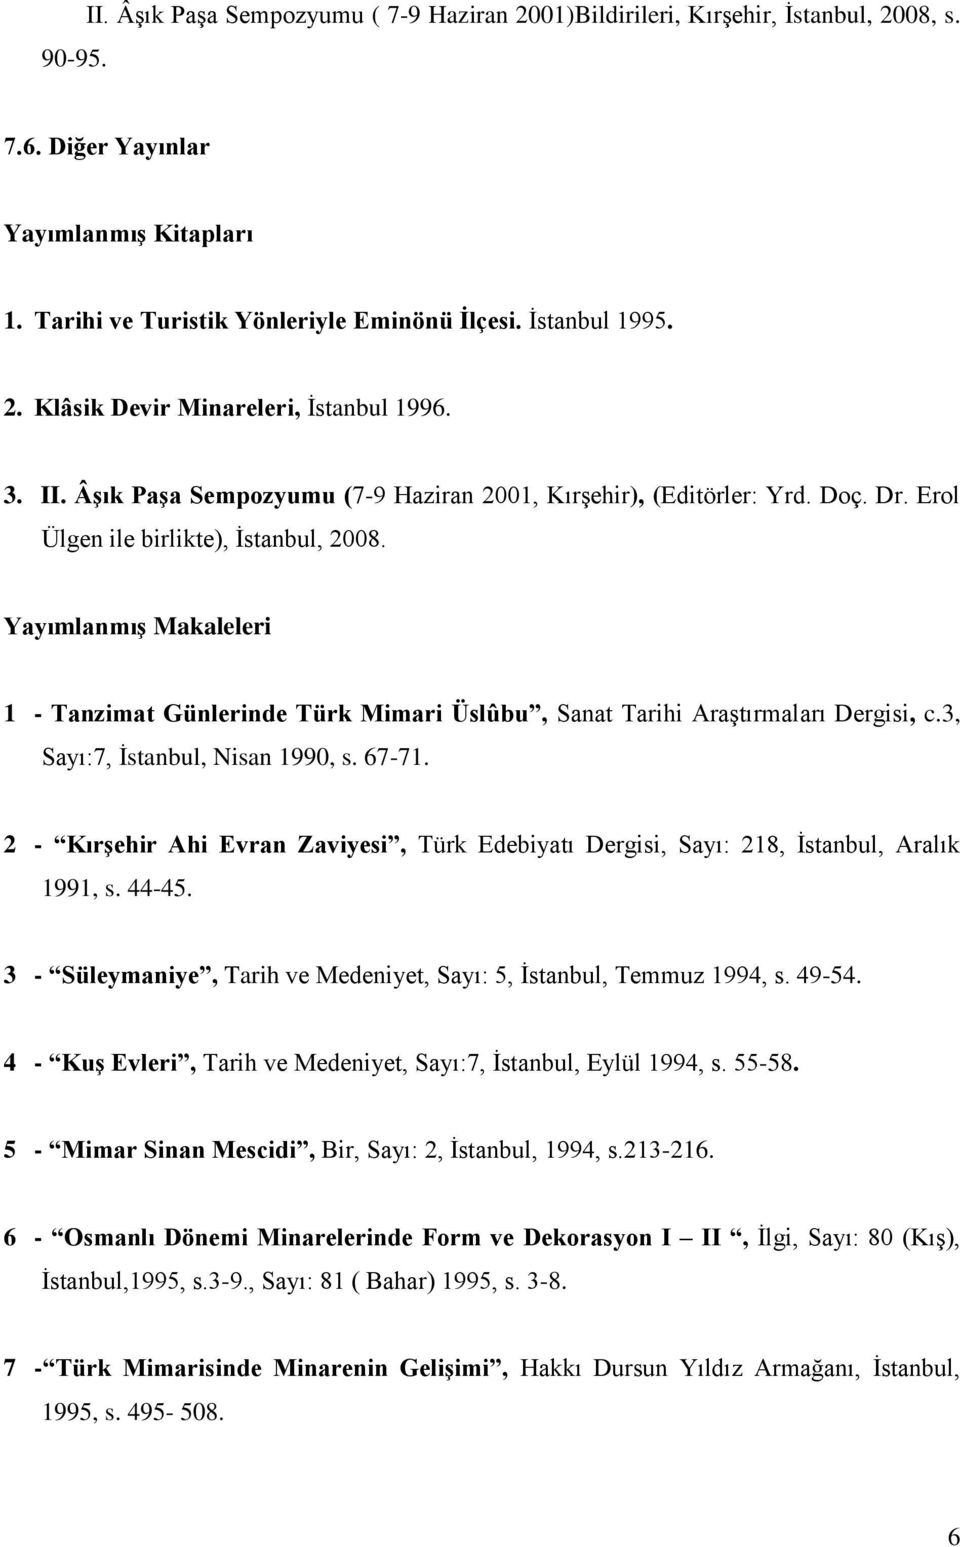 Yayımlanmış Makaleleri 1 - Tanzimat Günlerinde Türk Mimari Üslûbu, Sanat Tarihi Araştırmaları Dergisi, c.3, Sayı:7, İstanbul, Nisan 1990, s. 67-71.